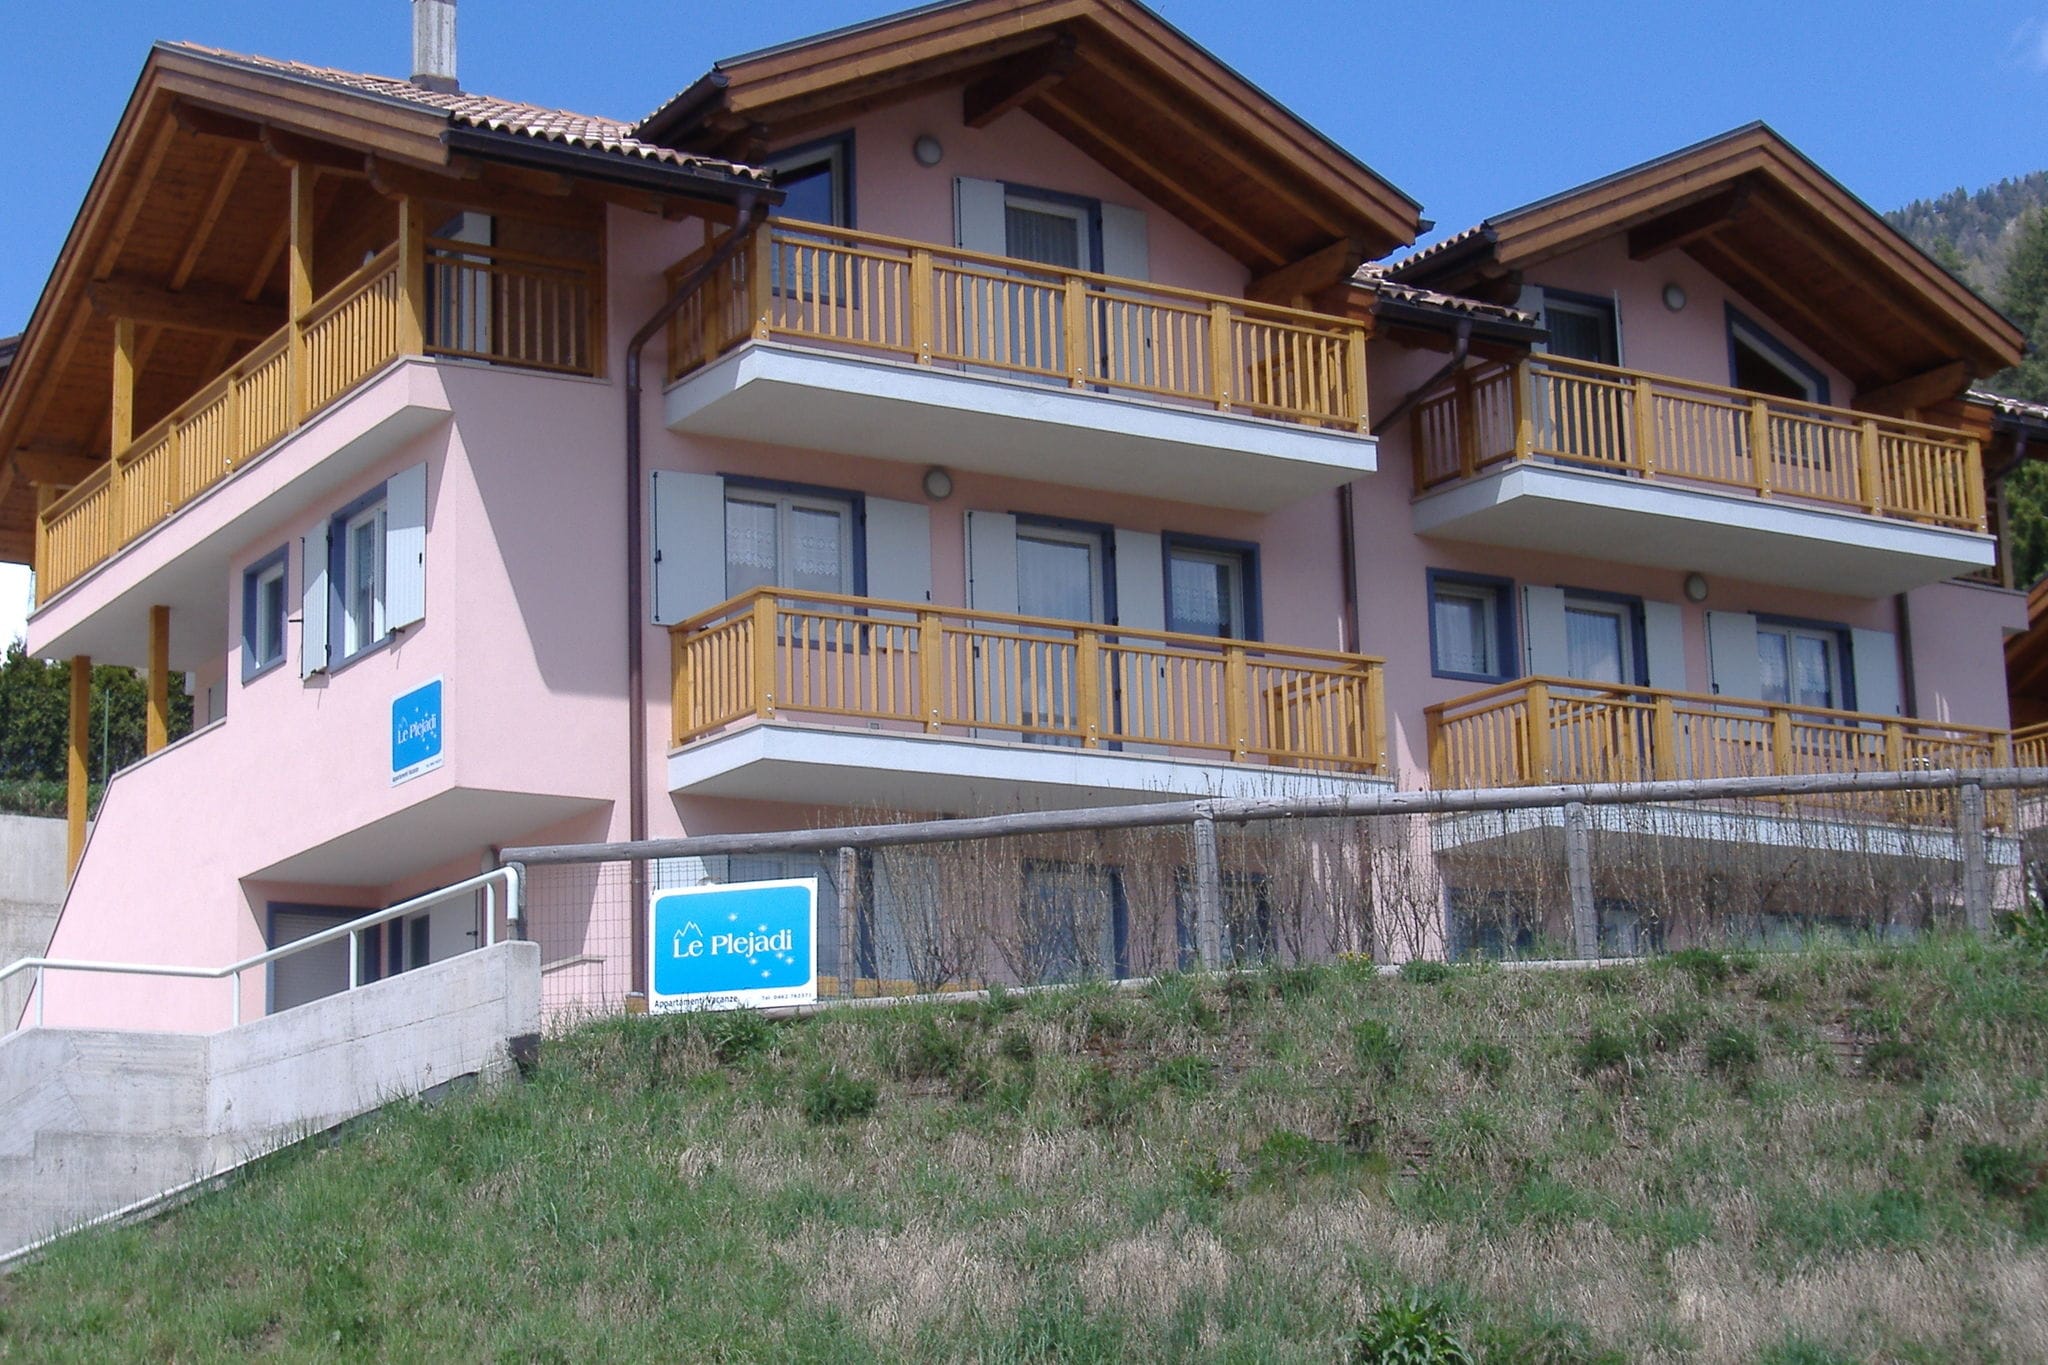 Gezellig appartement in Cavalese, Italië nabij het skigebied